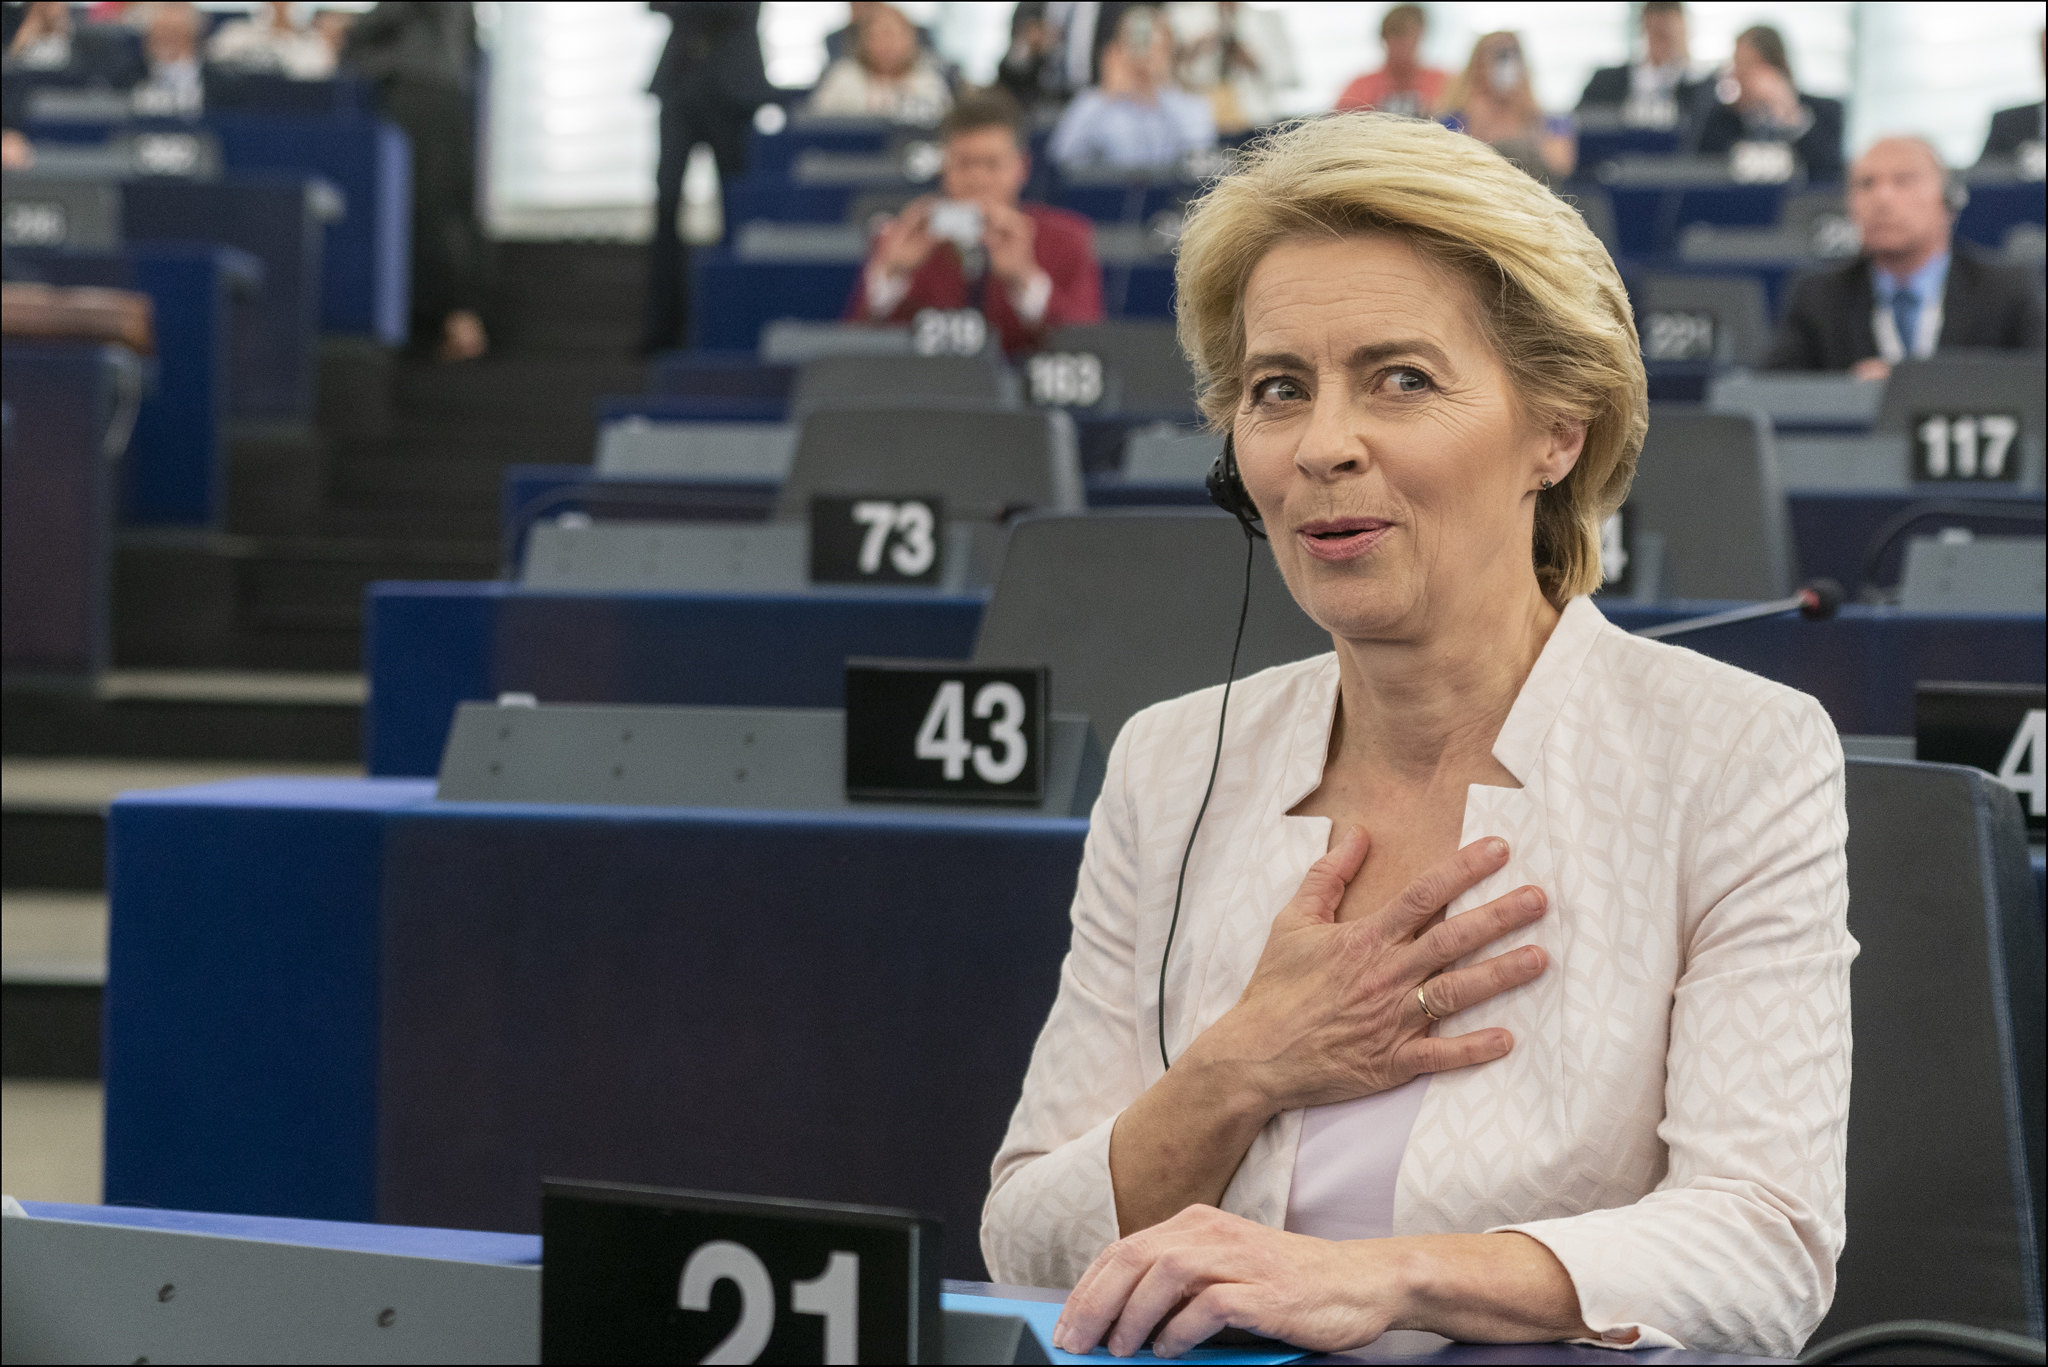 Parliament elects Ursula von der Leyen as first female Commission President in 2019